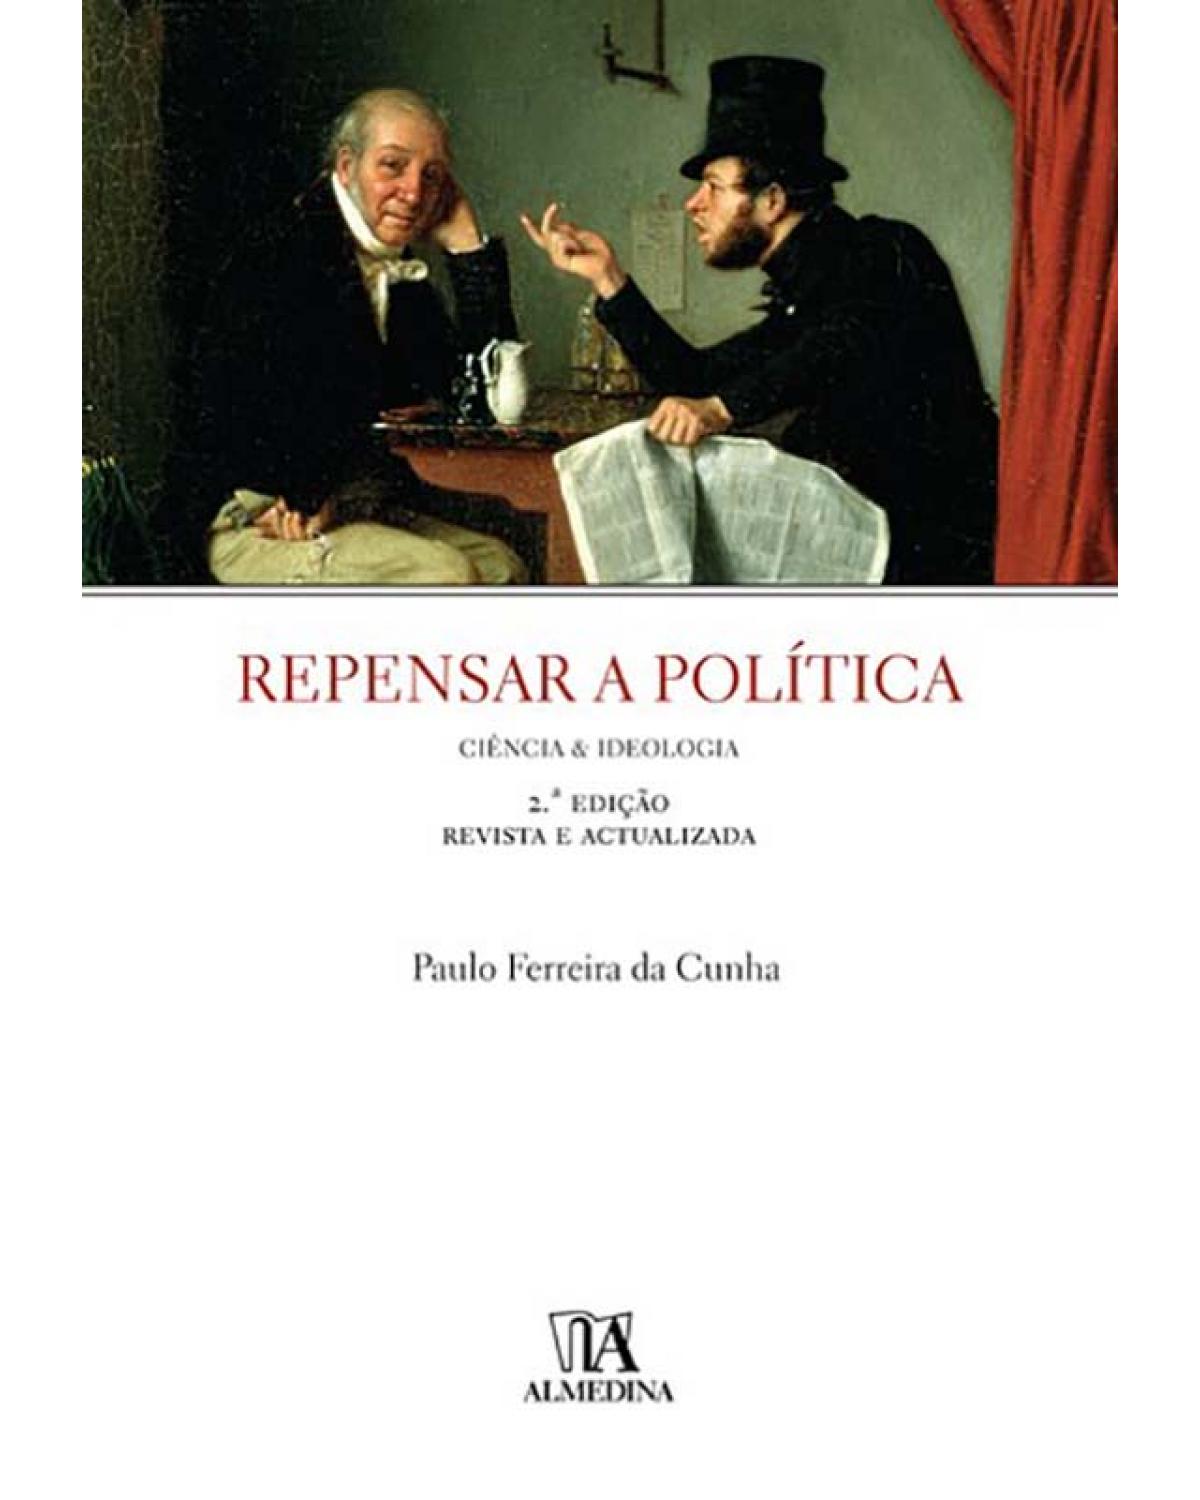 Repensar a política - ciência e ideologia - 2ª Edição | 2007